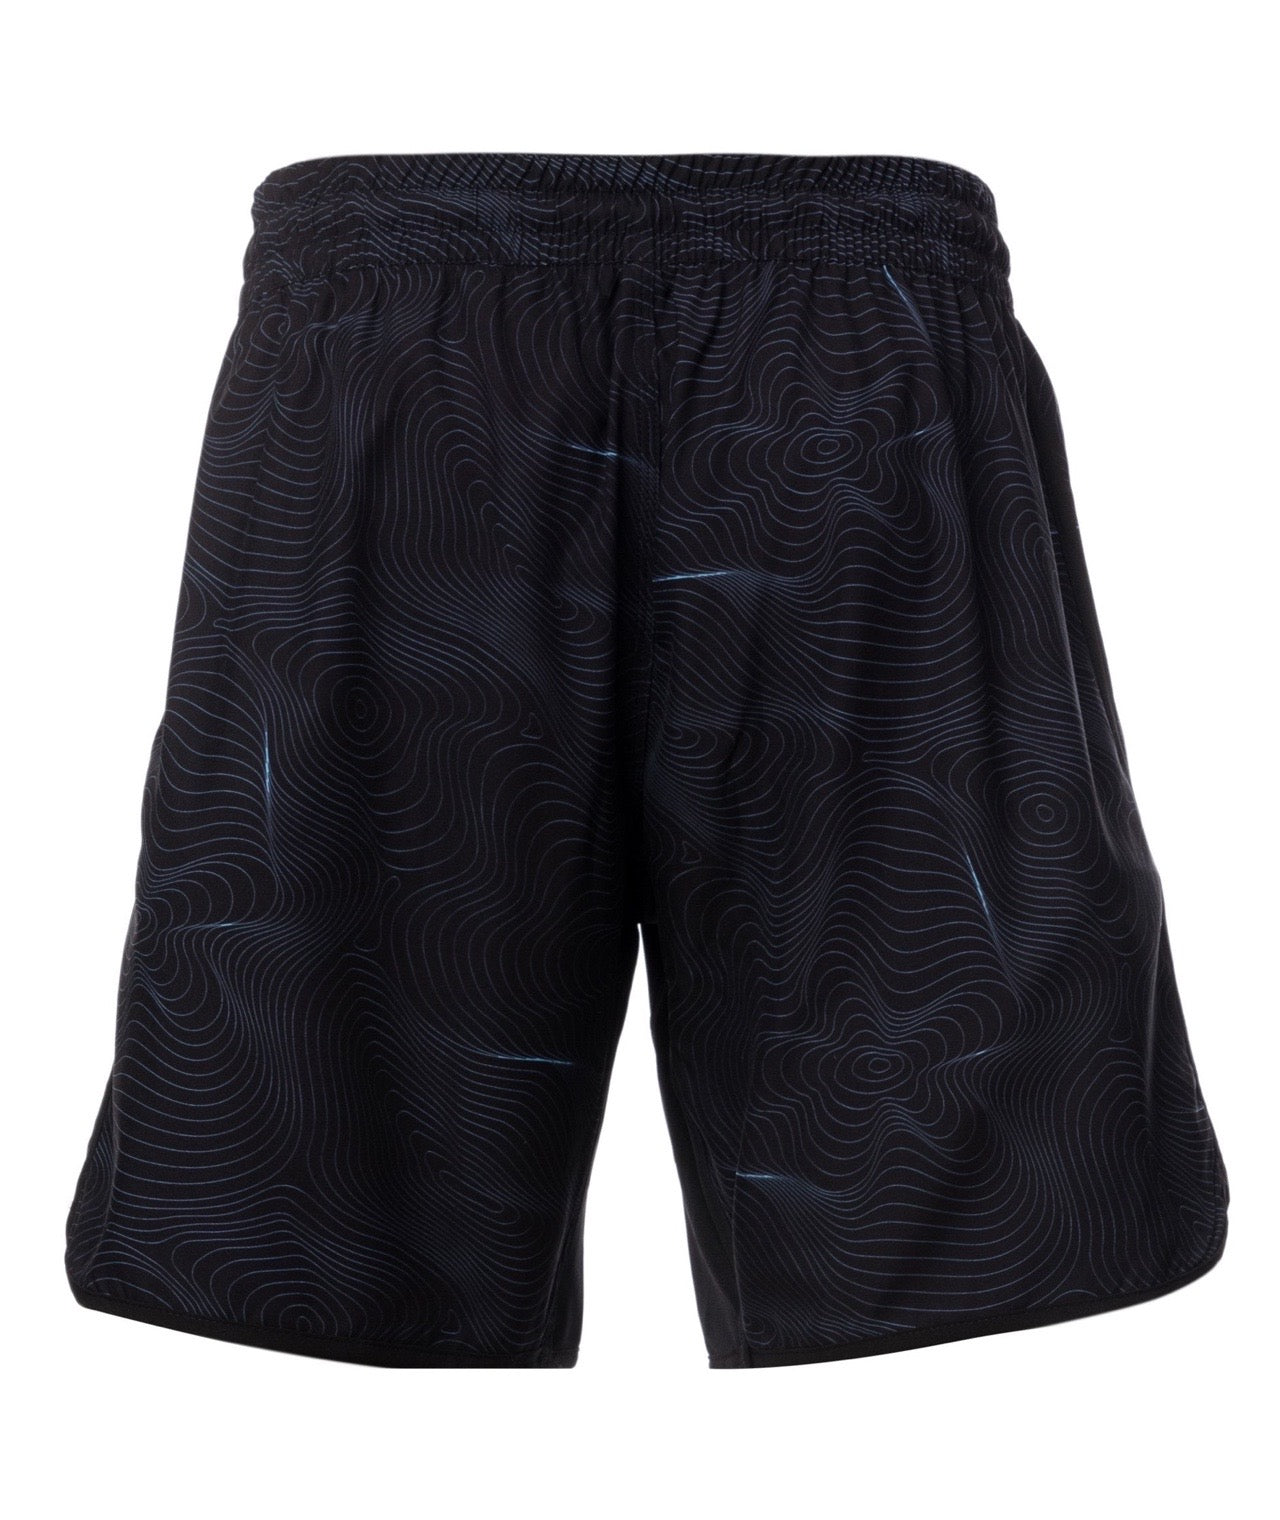 Elite Grappling Shorts - Black & Blue